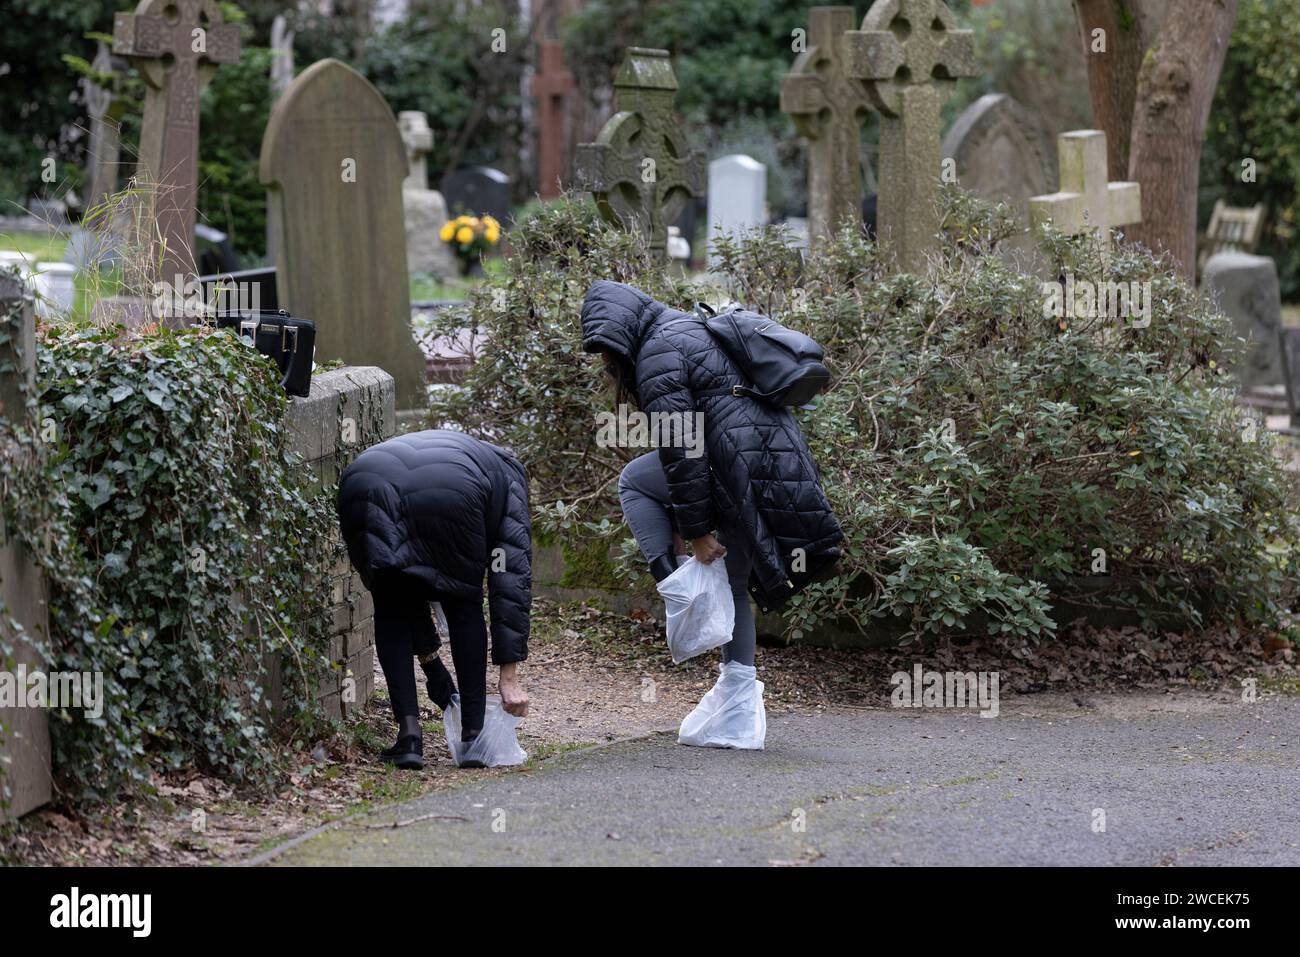 Les gens portent des sacs en plastique sur leurs pieds au cimetière de Highgate, North London Graveyard obtient 100 000 000 £ de financement de la loterie nationale pour aider aux rénovations Banque D'Images